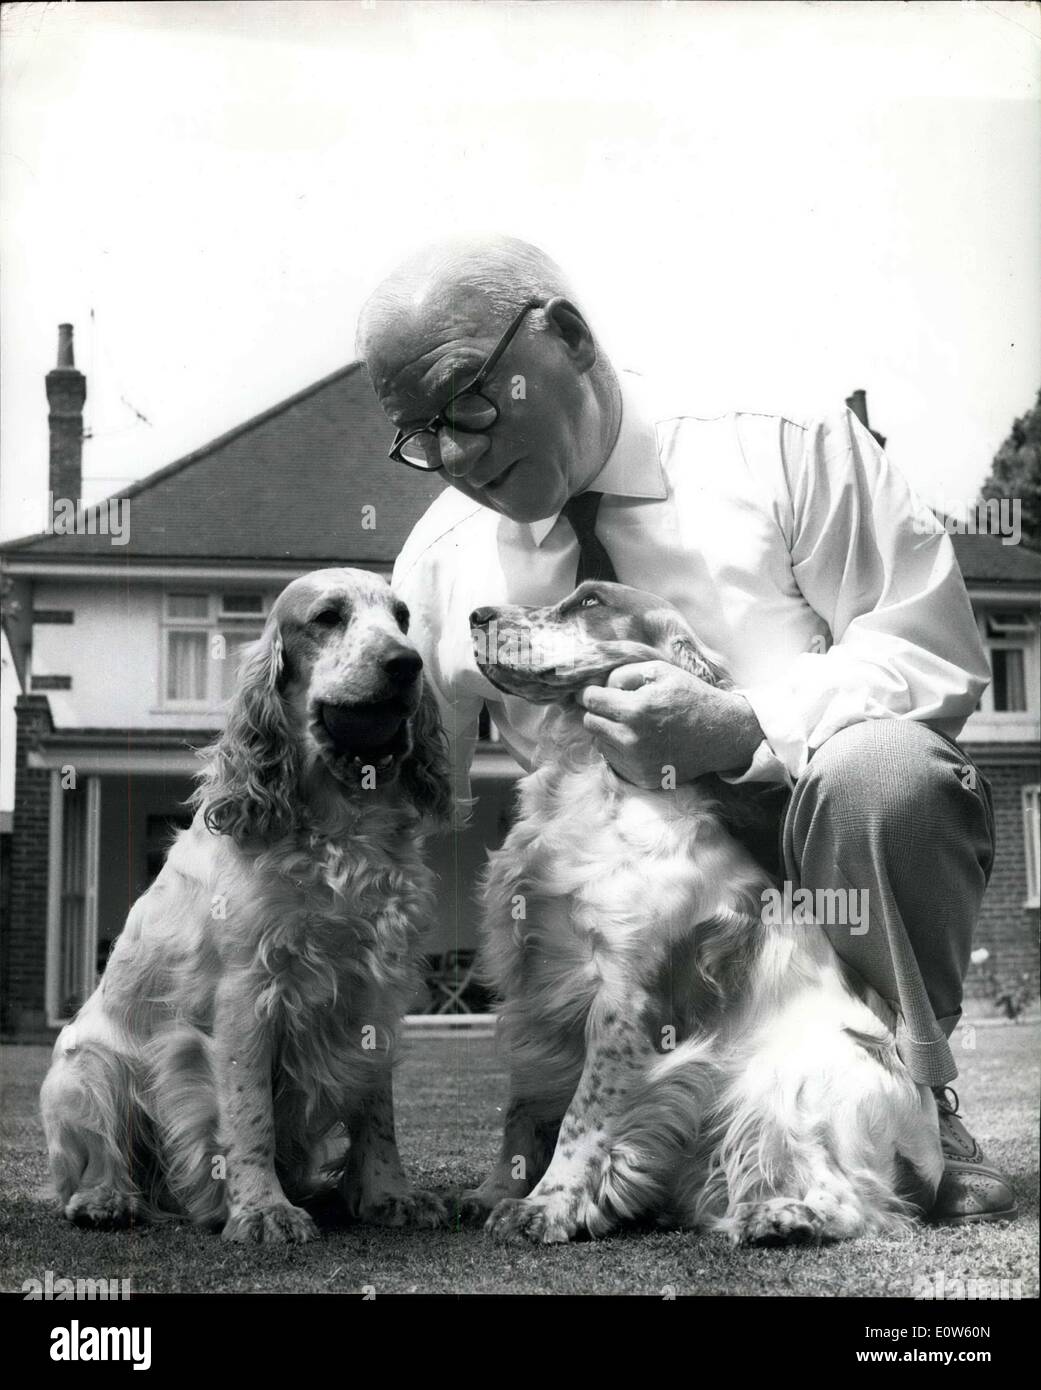 Juillet 21, 1961 - M. Green met en place 00 000 Fiducie pour ''ogv Sanctuary'' : M. Jerry verte a 75 ans et propriétaire de terres de Bournemouth - a dit hier qu'il a été la mise en place d'un 00, 000 - fiducie avec laquelle il prévoit de construire un sanctuaire ''dog'' à introduit le Bragg, Lincolnshire - pour accueillir 600 chiens.. La fiducie sera connu sous le nom de Jerry Green Foundation Trust - et M. Green a 46 ans filles a fait don de 0 000. Il a dit qu'il a été mise en place de la fiducie à la mémoire de son cocker animaux ''Rusty'' qui est mort en 1959. Photo Show Mr Banque D'Images